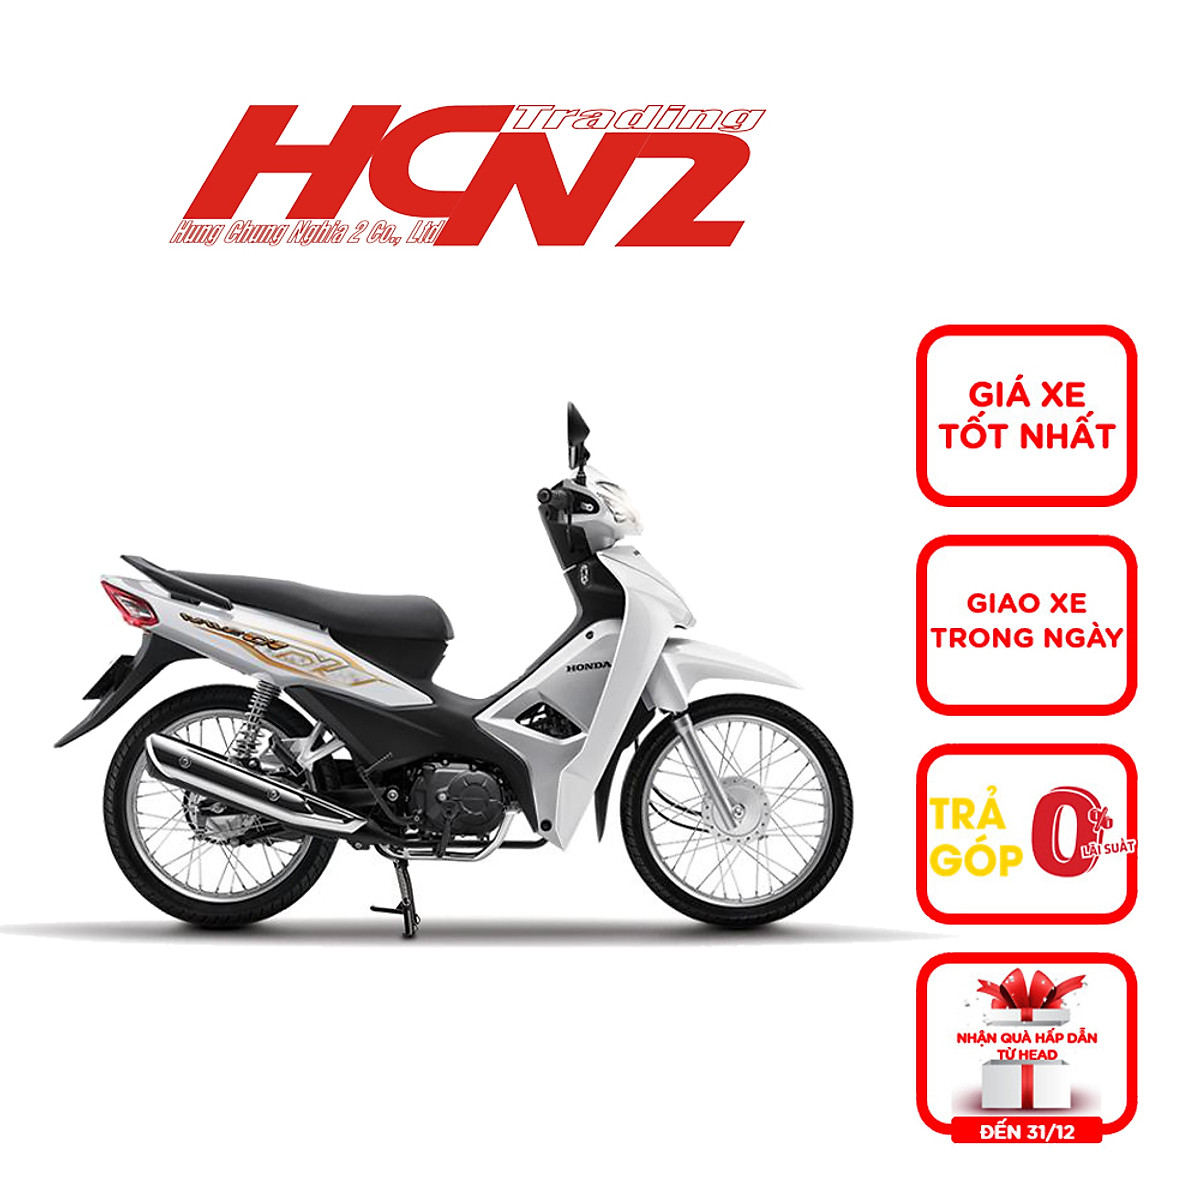 Top 29 đại lý cửa hàng Honda tại Hà Nội bán đúng giá niêm yết 2020